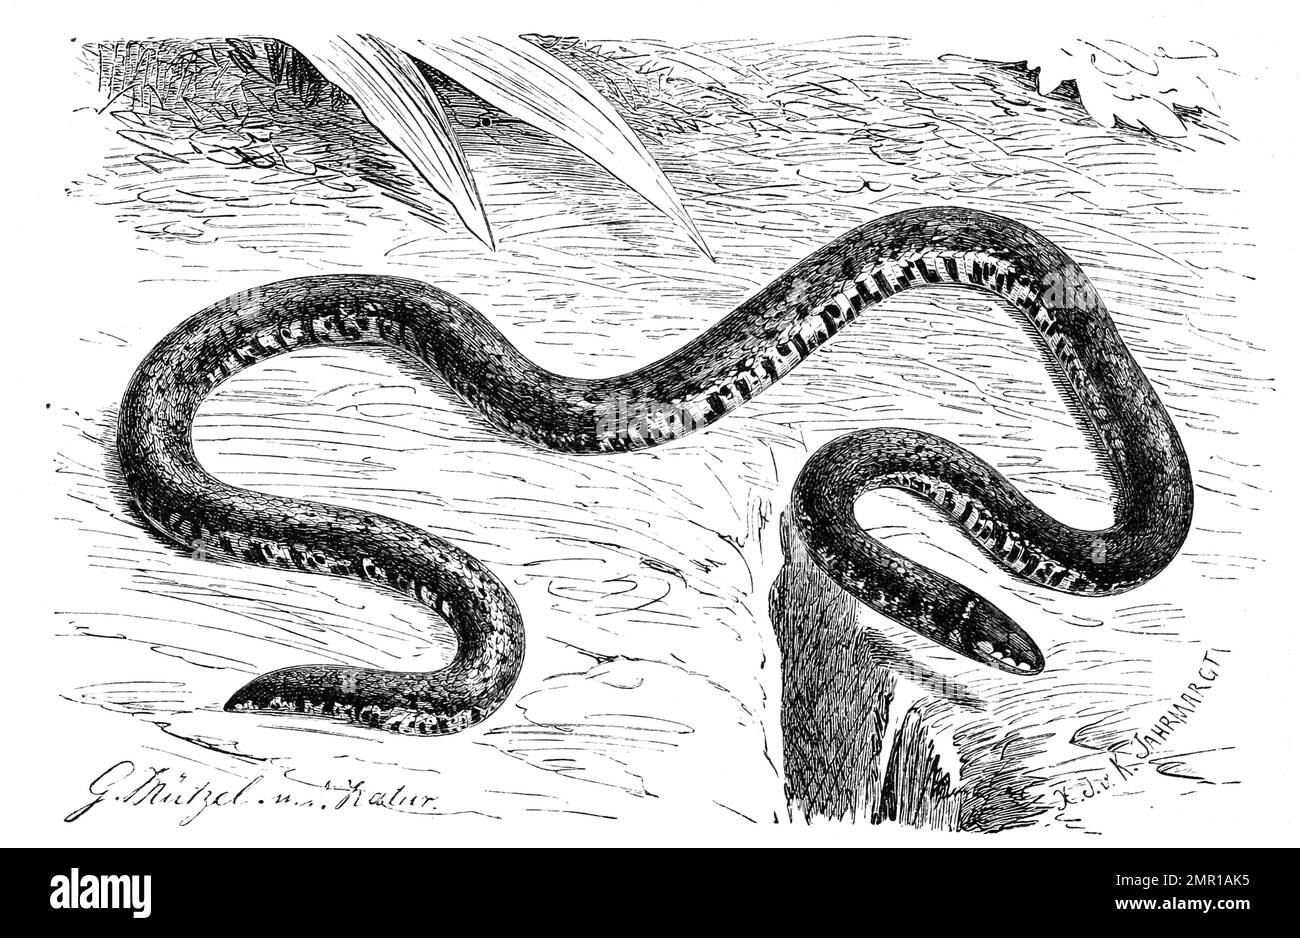 Reptilien, Zwergschlange, Linne's Dwarf Snake, Calamaria linnaei, Historisch, digital restaurierte Reproduktion von einer Vorlage aus dem 19. Jahrhundert Stock Photo